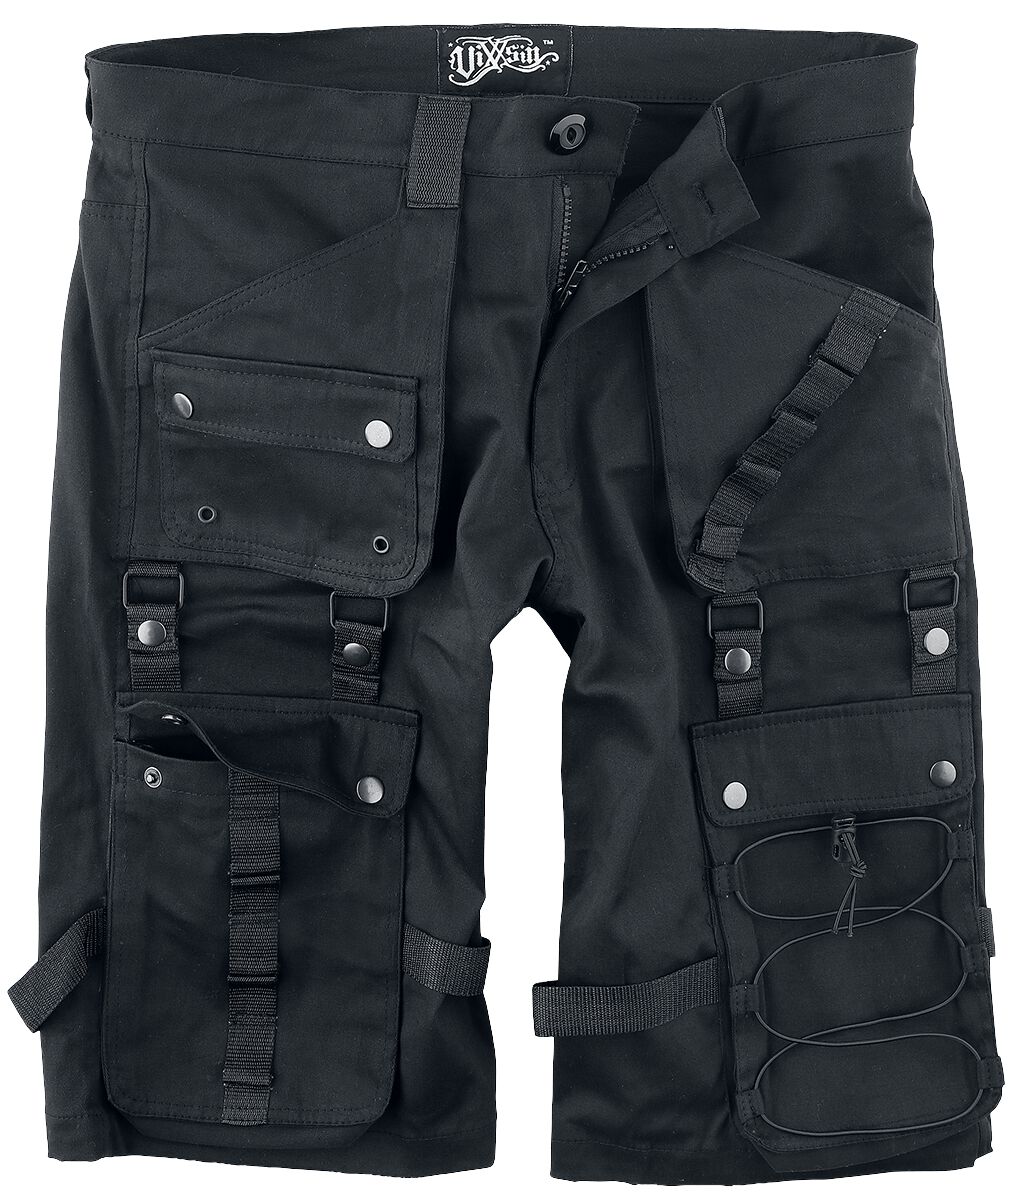 Vixxsin - Gothic Short - Lyall Shorts - 30 bis 38 - für Männer - Größe 30 - schwarz